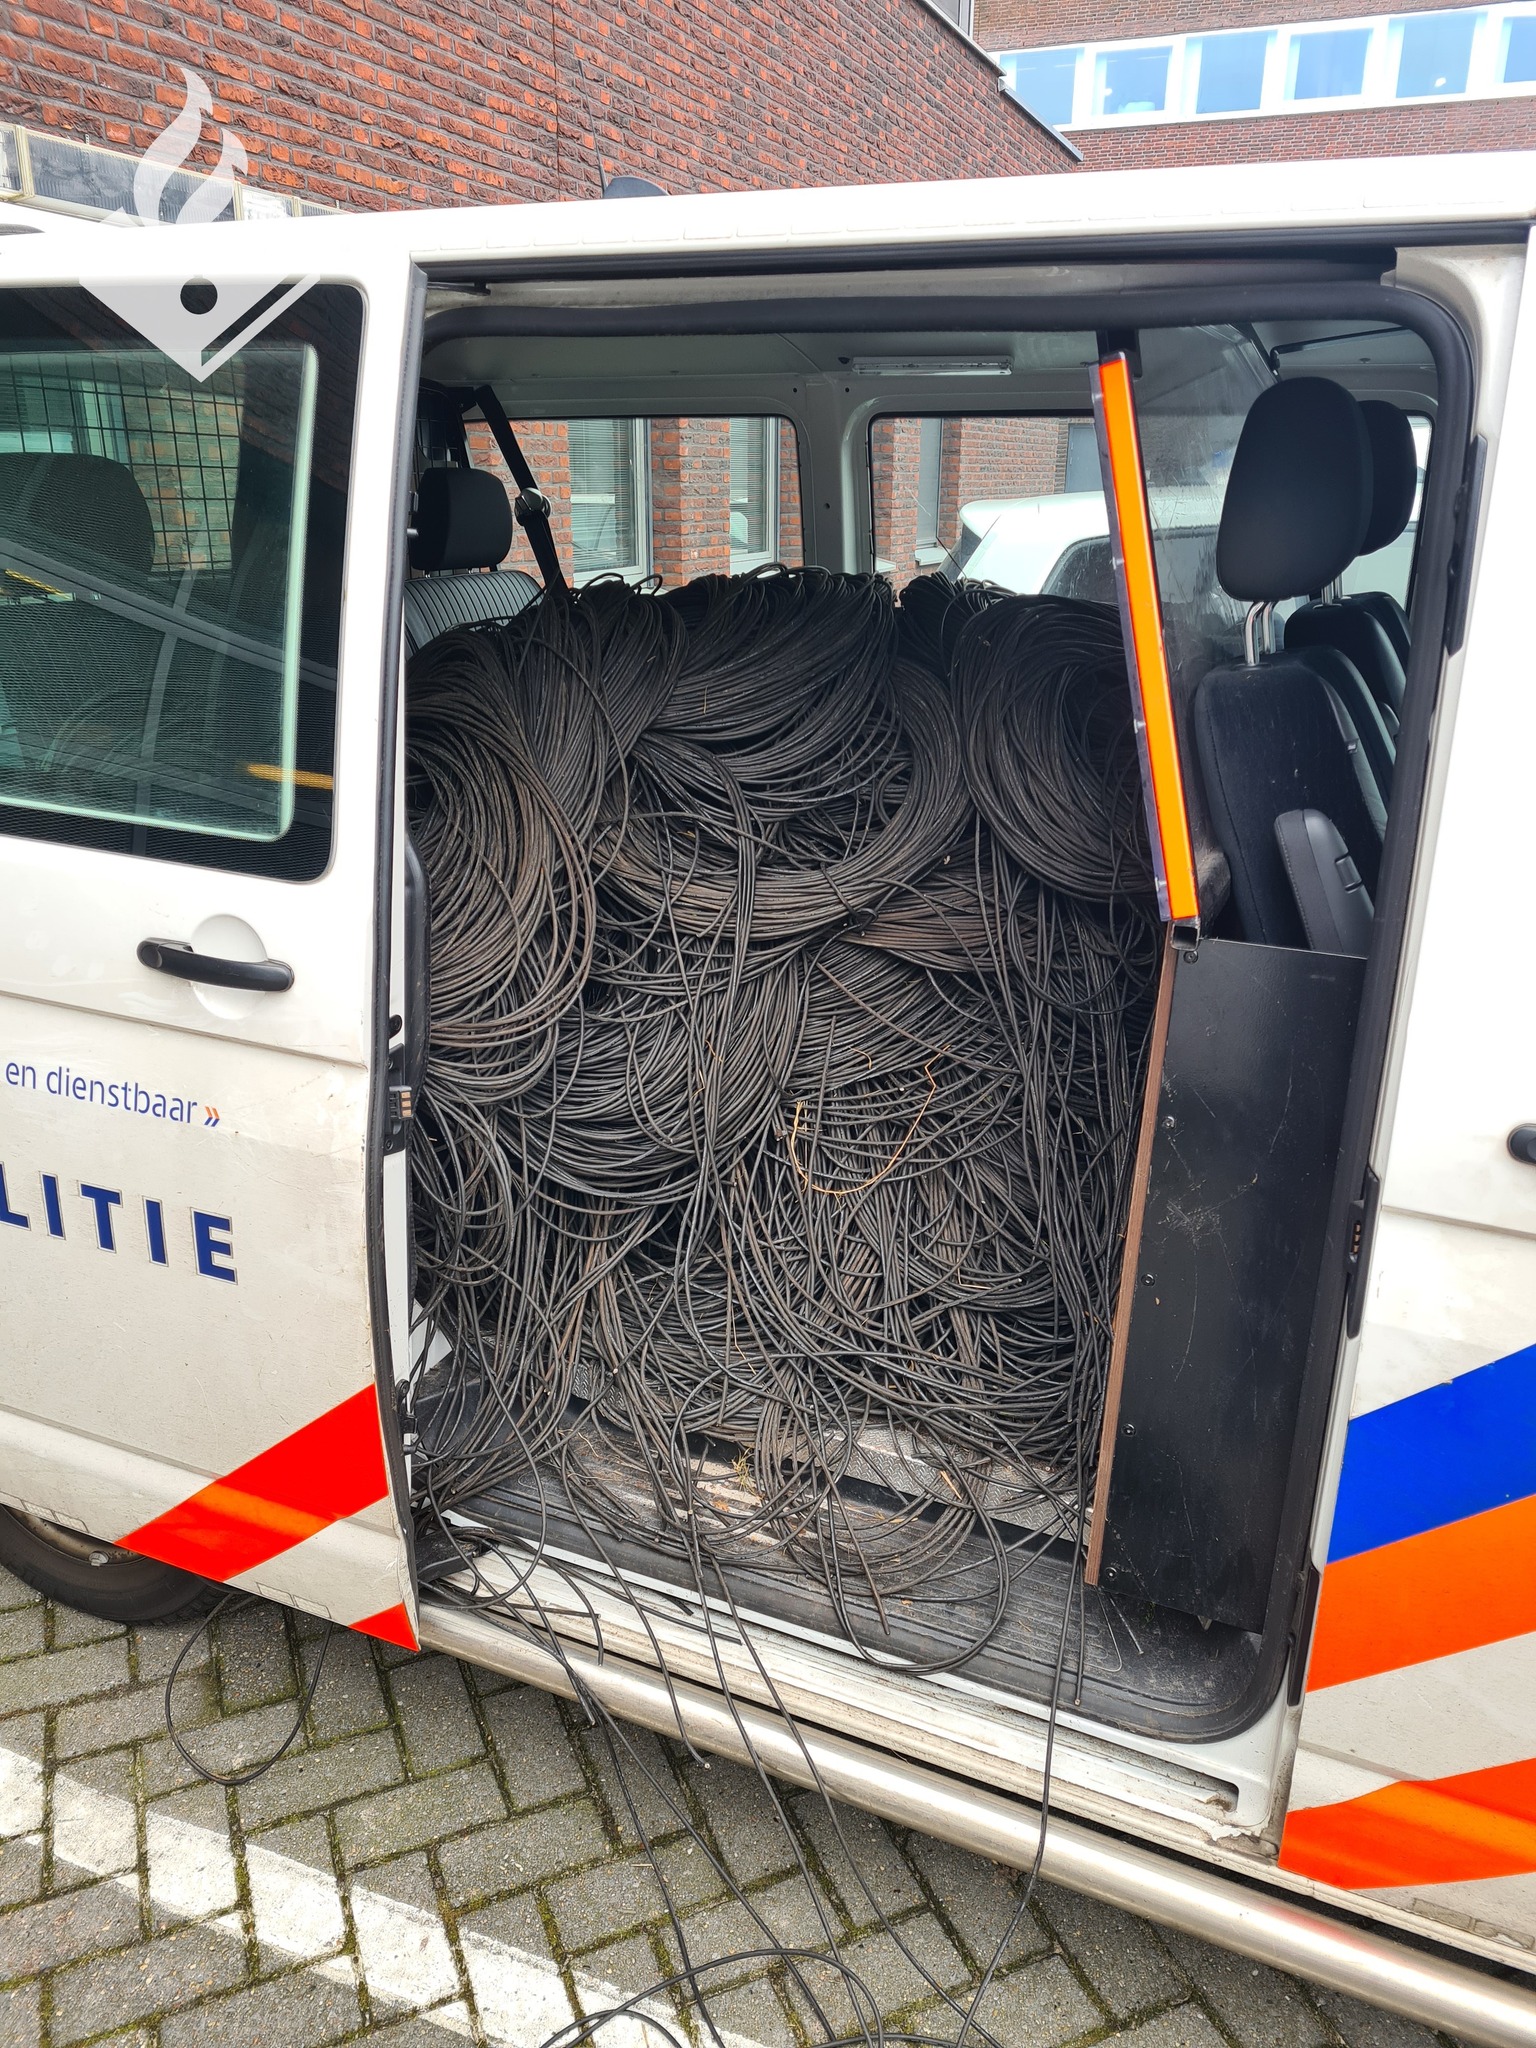 Grote partij gestolen kabels aangetroffen in auto, drie aanhoudingen